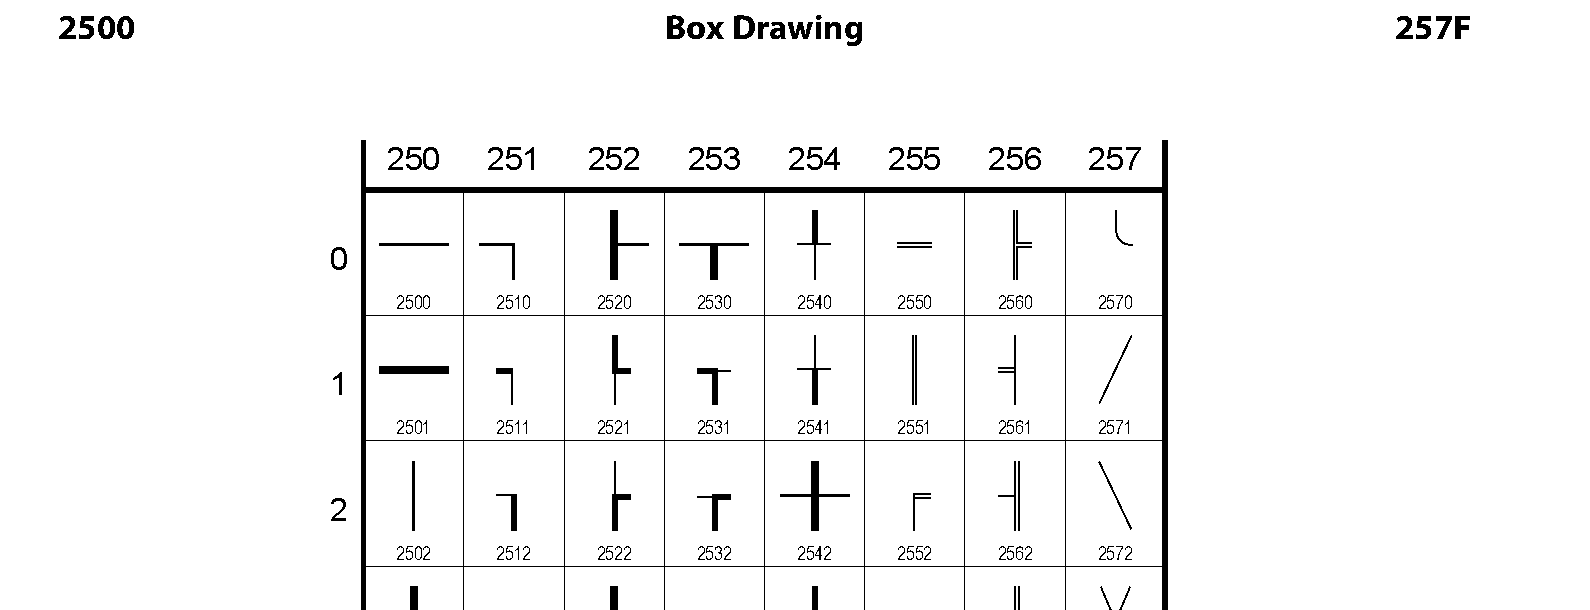 Unicode - Box Drawing